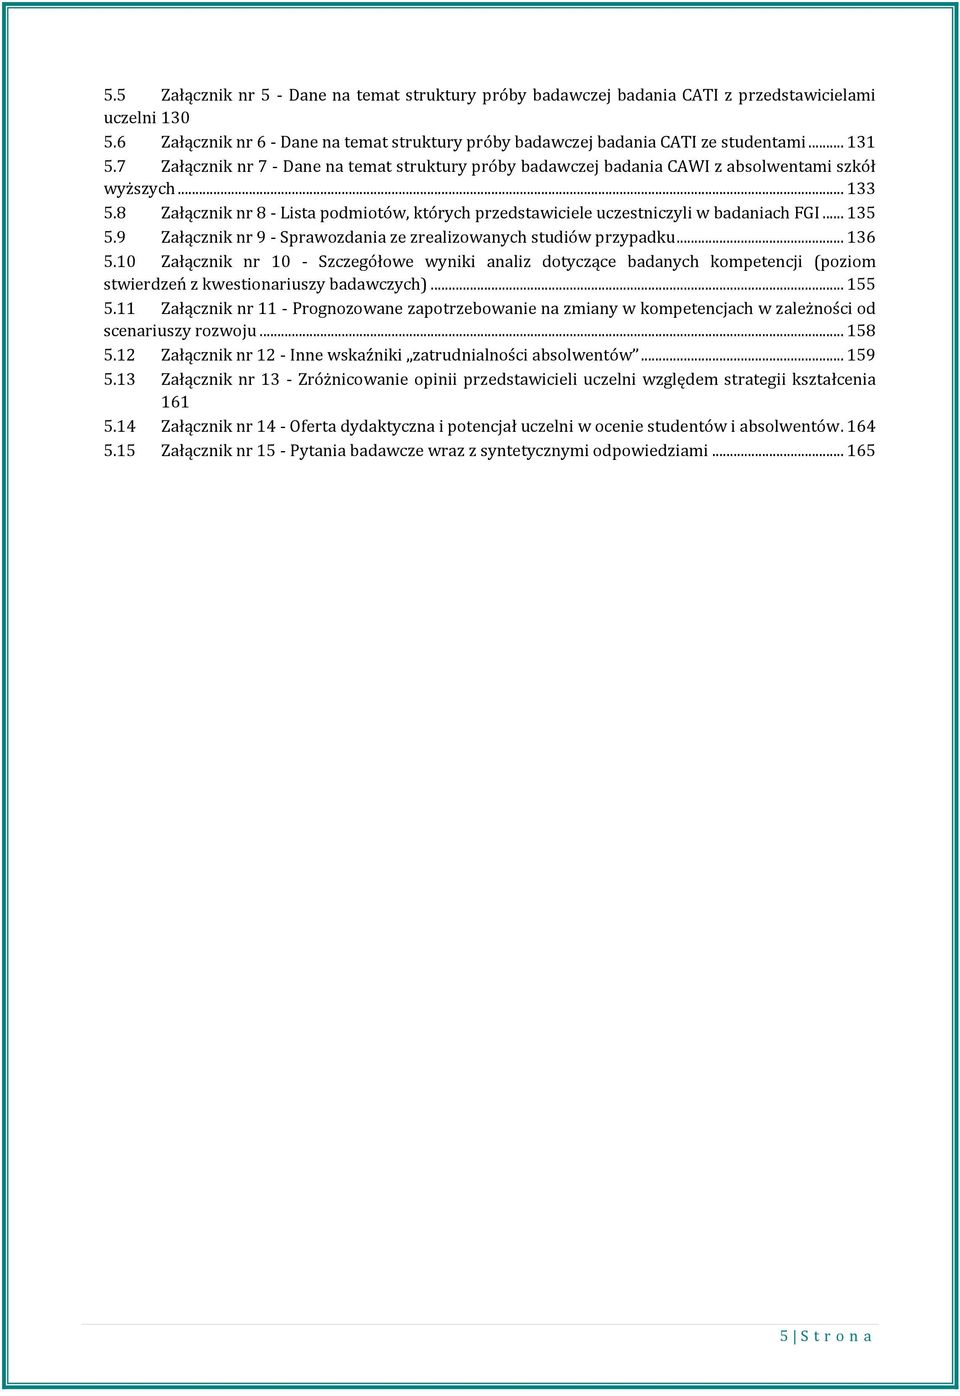 8 Załącznik nr 8 - Lista podmiotów, których przedstawiciele uczestniczyli w badaniach FGI... 135 5.9 Załącznik nr 9 - Sprawozdania ze zrealizowanych studiów przypadku... 136 5.